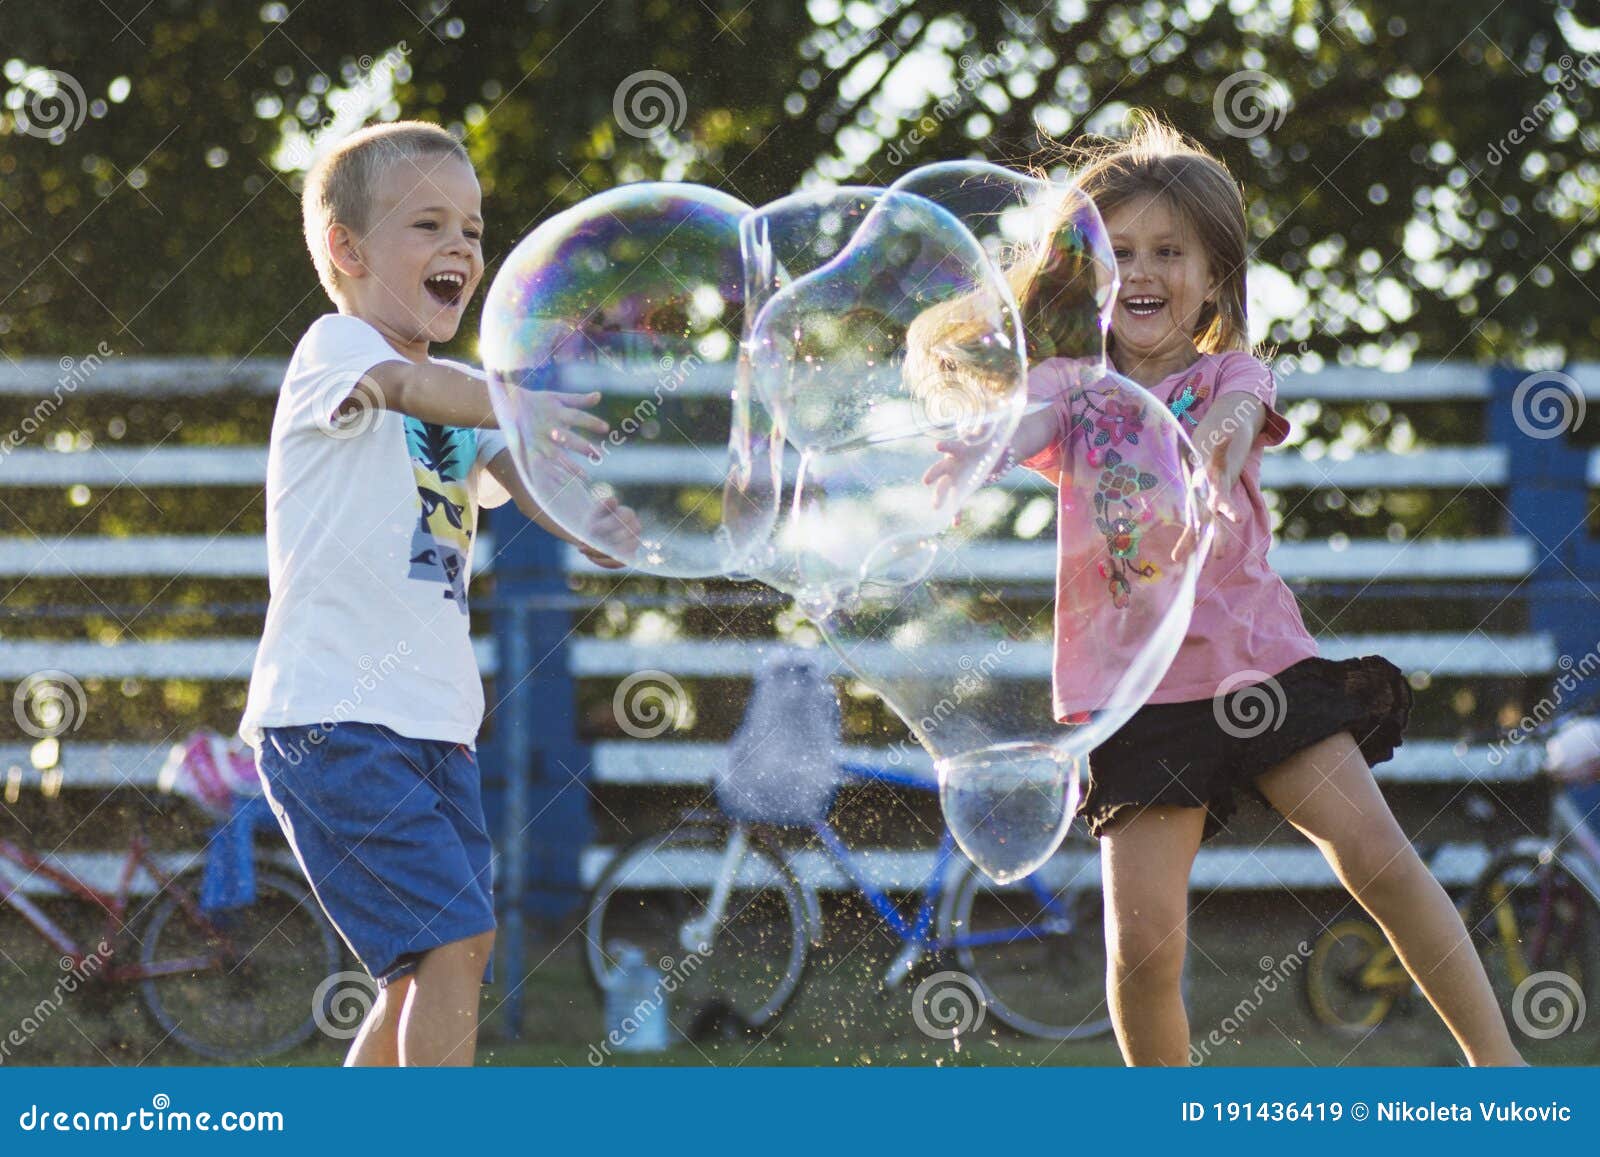 Foto niños jugando pompas de jabón